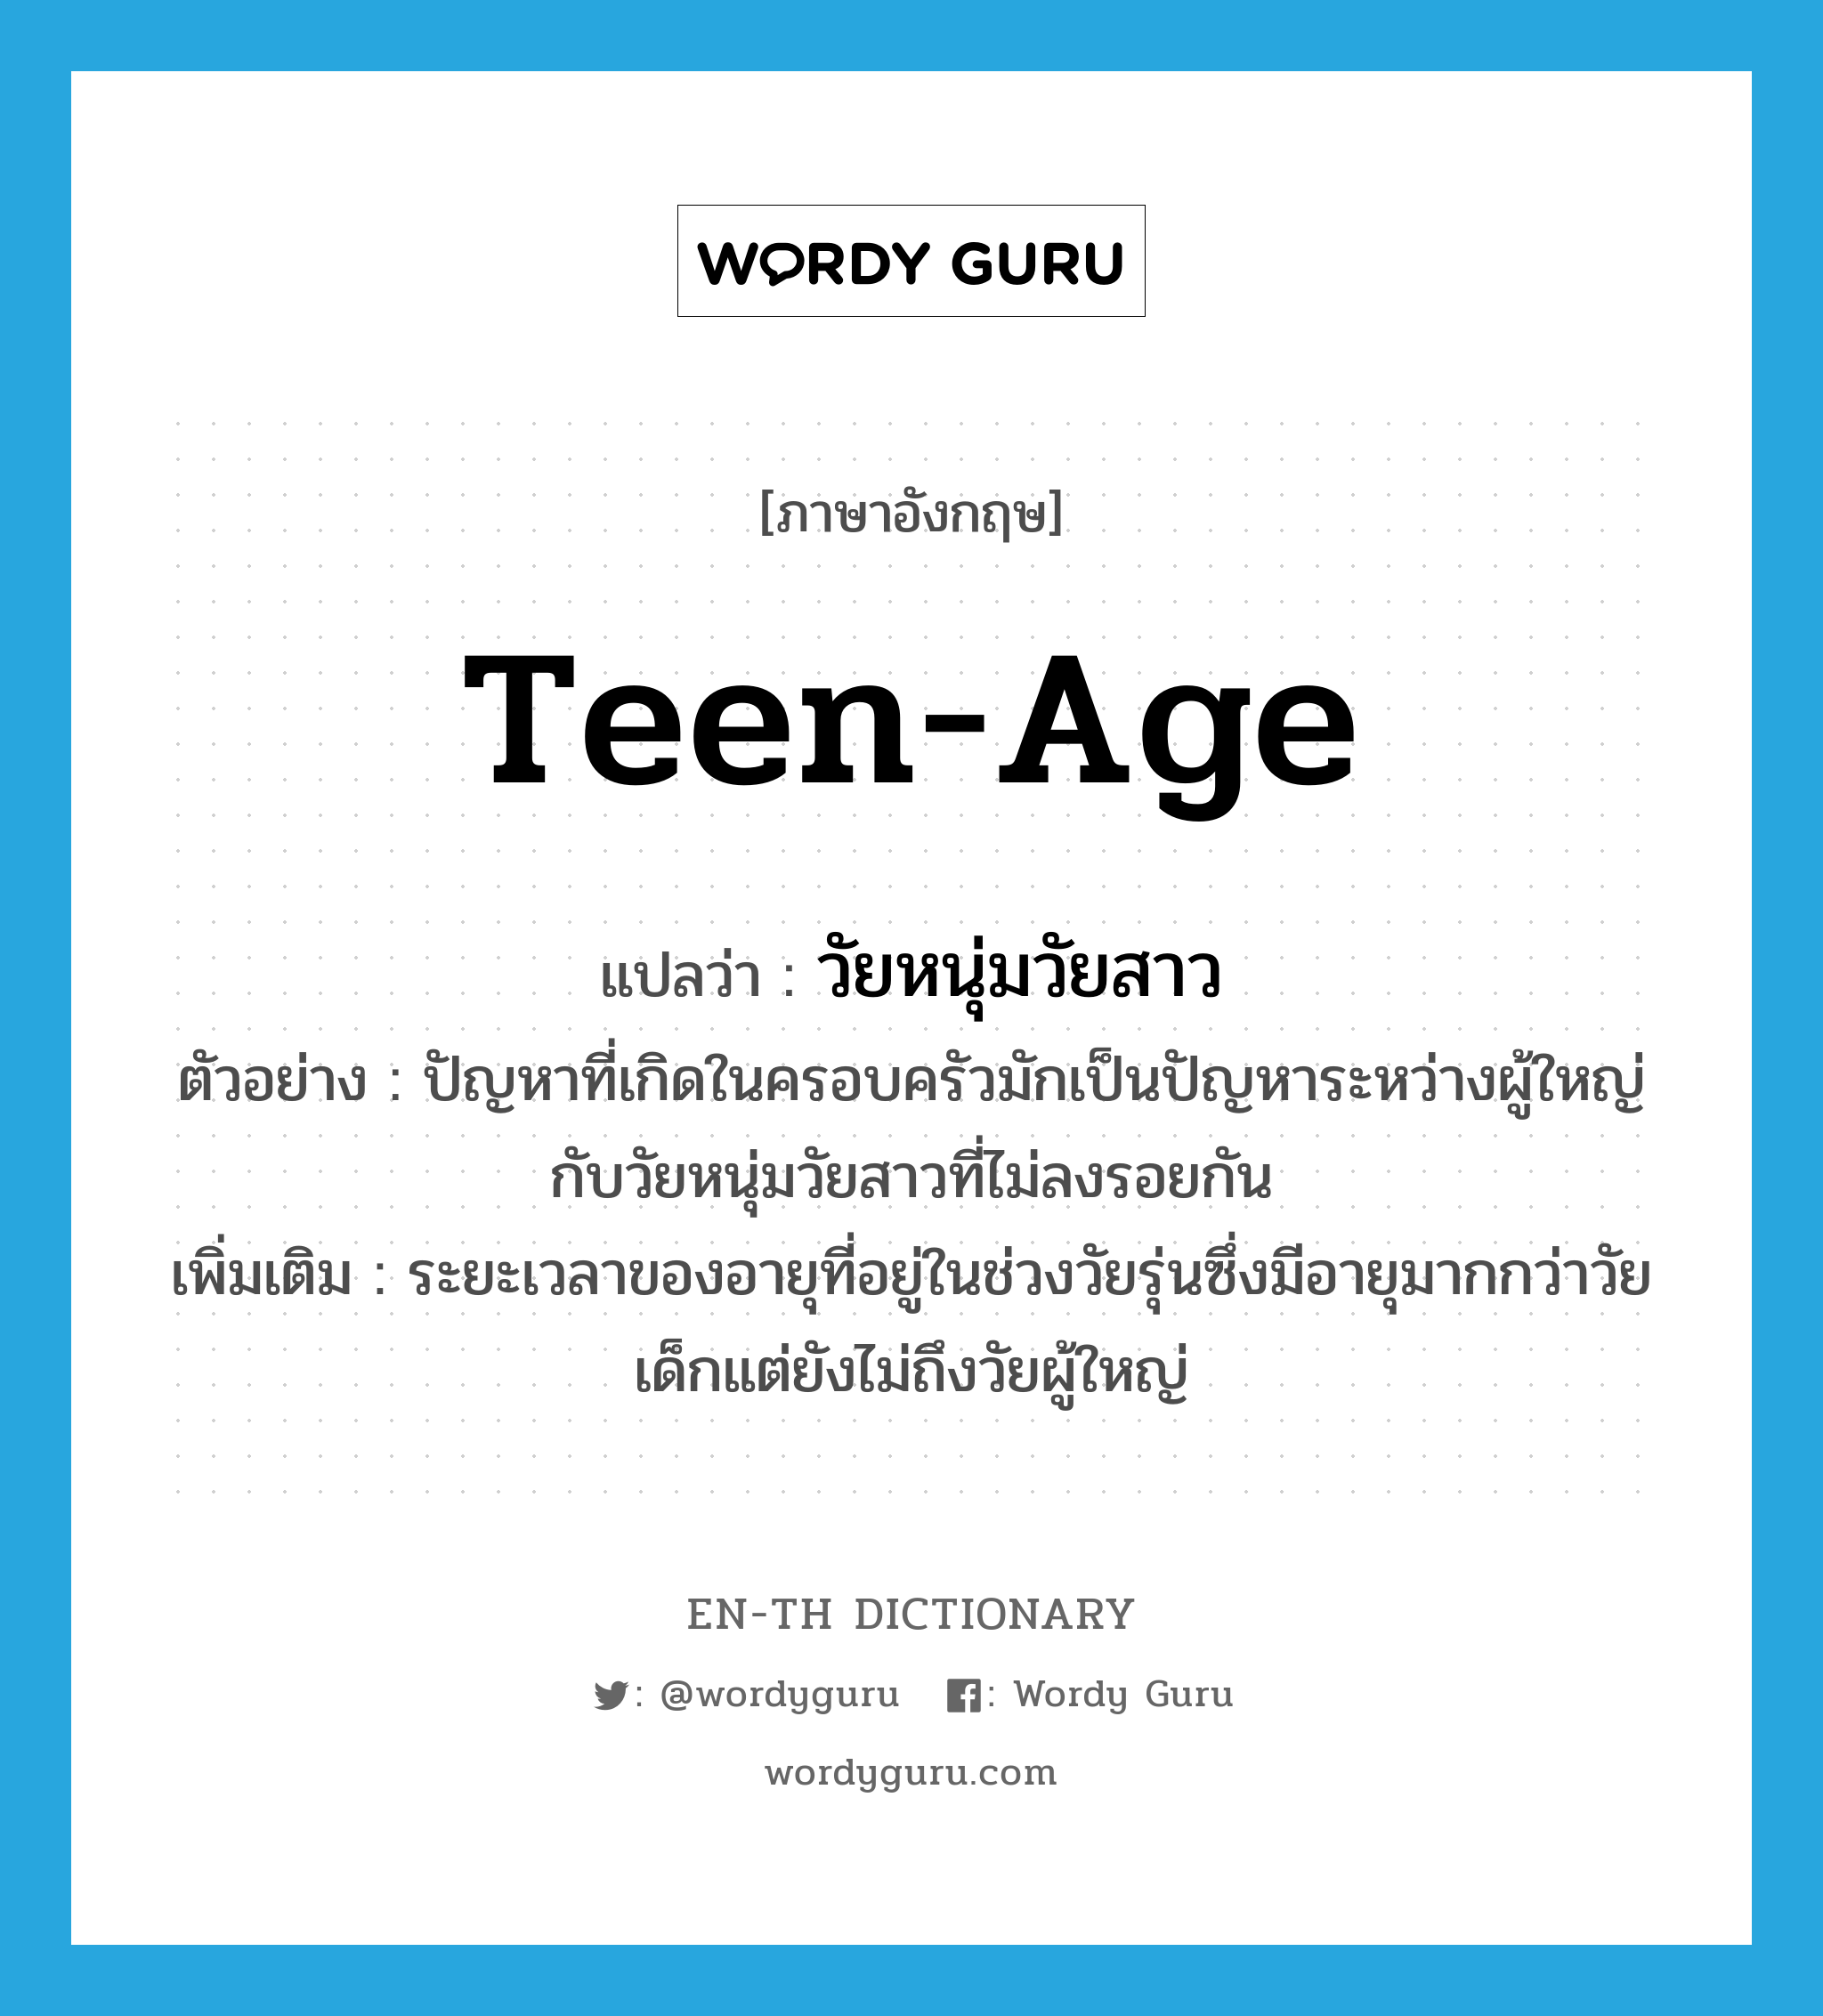 teen-age แปลว่า?, คำศัพท์ภาษาอังกฤษ teen-age แปลว่า วัยหนุ่มวัยสาว ประเภท N ตัวอย่าง ปัญหาที่เกิดในครอบครัวมักเป็นปัญหาระหว่างผู้ใหญ่กับวัยหนุ่มวัยสาวที่ไม่ลงรอยกัน เพิ่มเติม ระยะเวลาของอายุที่อยู่ในช่วงวัยรุ่นซึ่งมีอายุมากกว่าวัยเด็กแต่ยังไม่ถึงวัยผู้ใหญ่ หมวด N